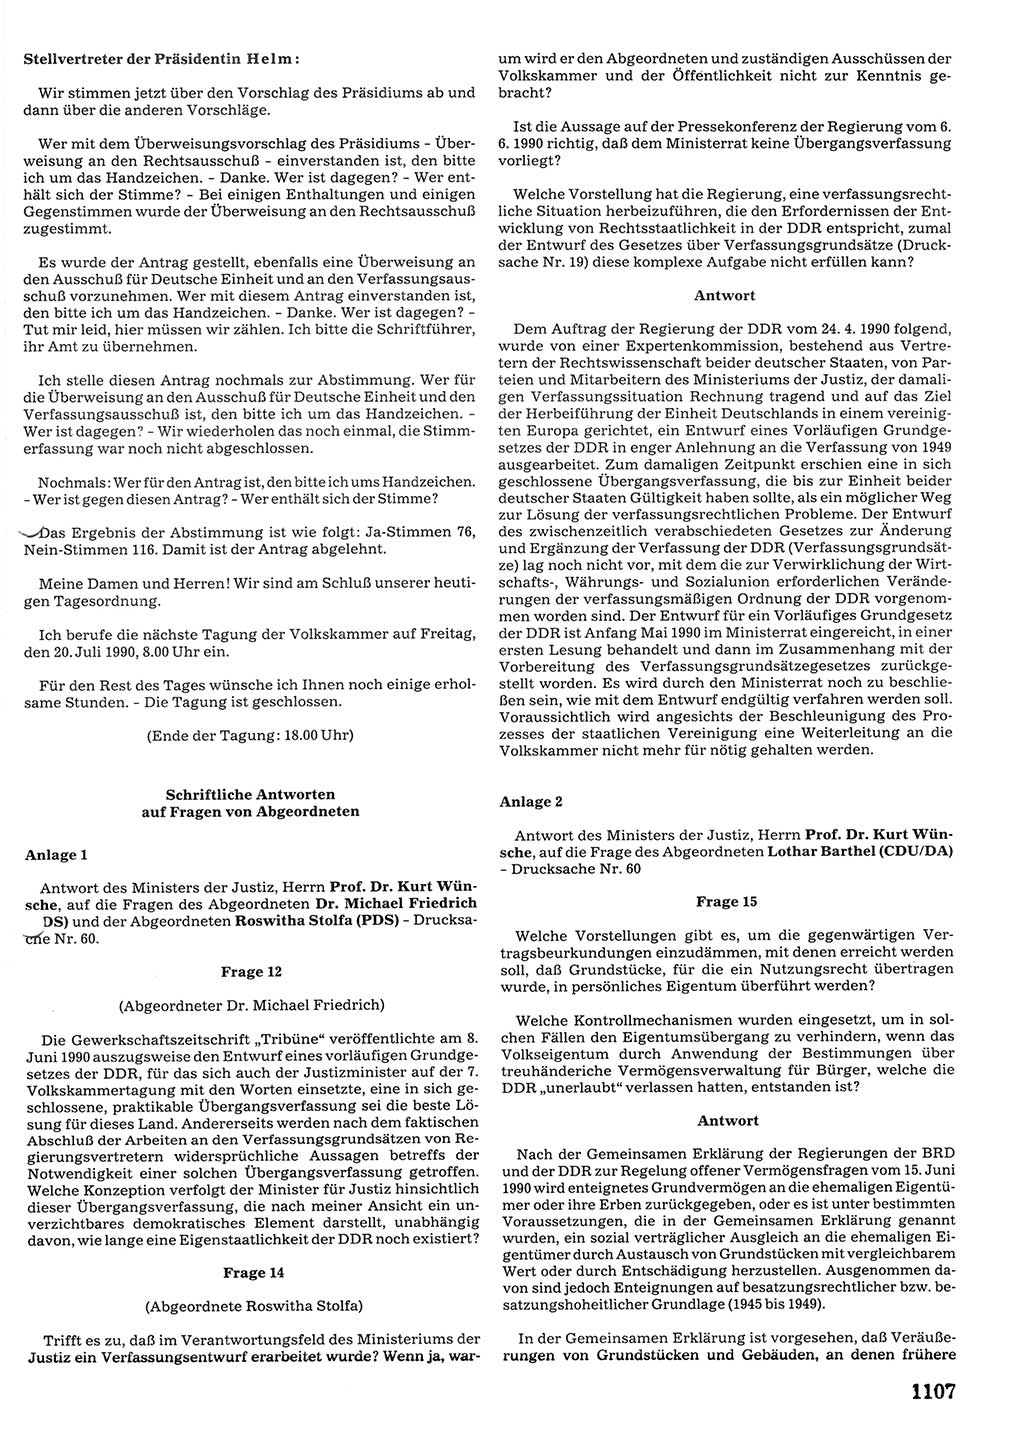 Tagungen der Volkskammer (VK) der Deutschen Demokratischen Republik (DDR), 10. Wahlperiode 1990, Seite 1107 (VK. DDR 10. WP. 1990, Prot. Tg. 1-38, 5.4.-2.10.1990, S. 1107)